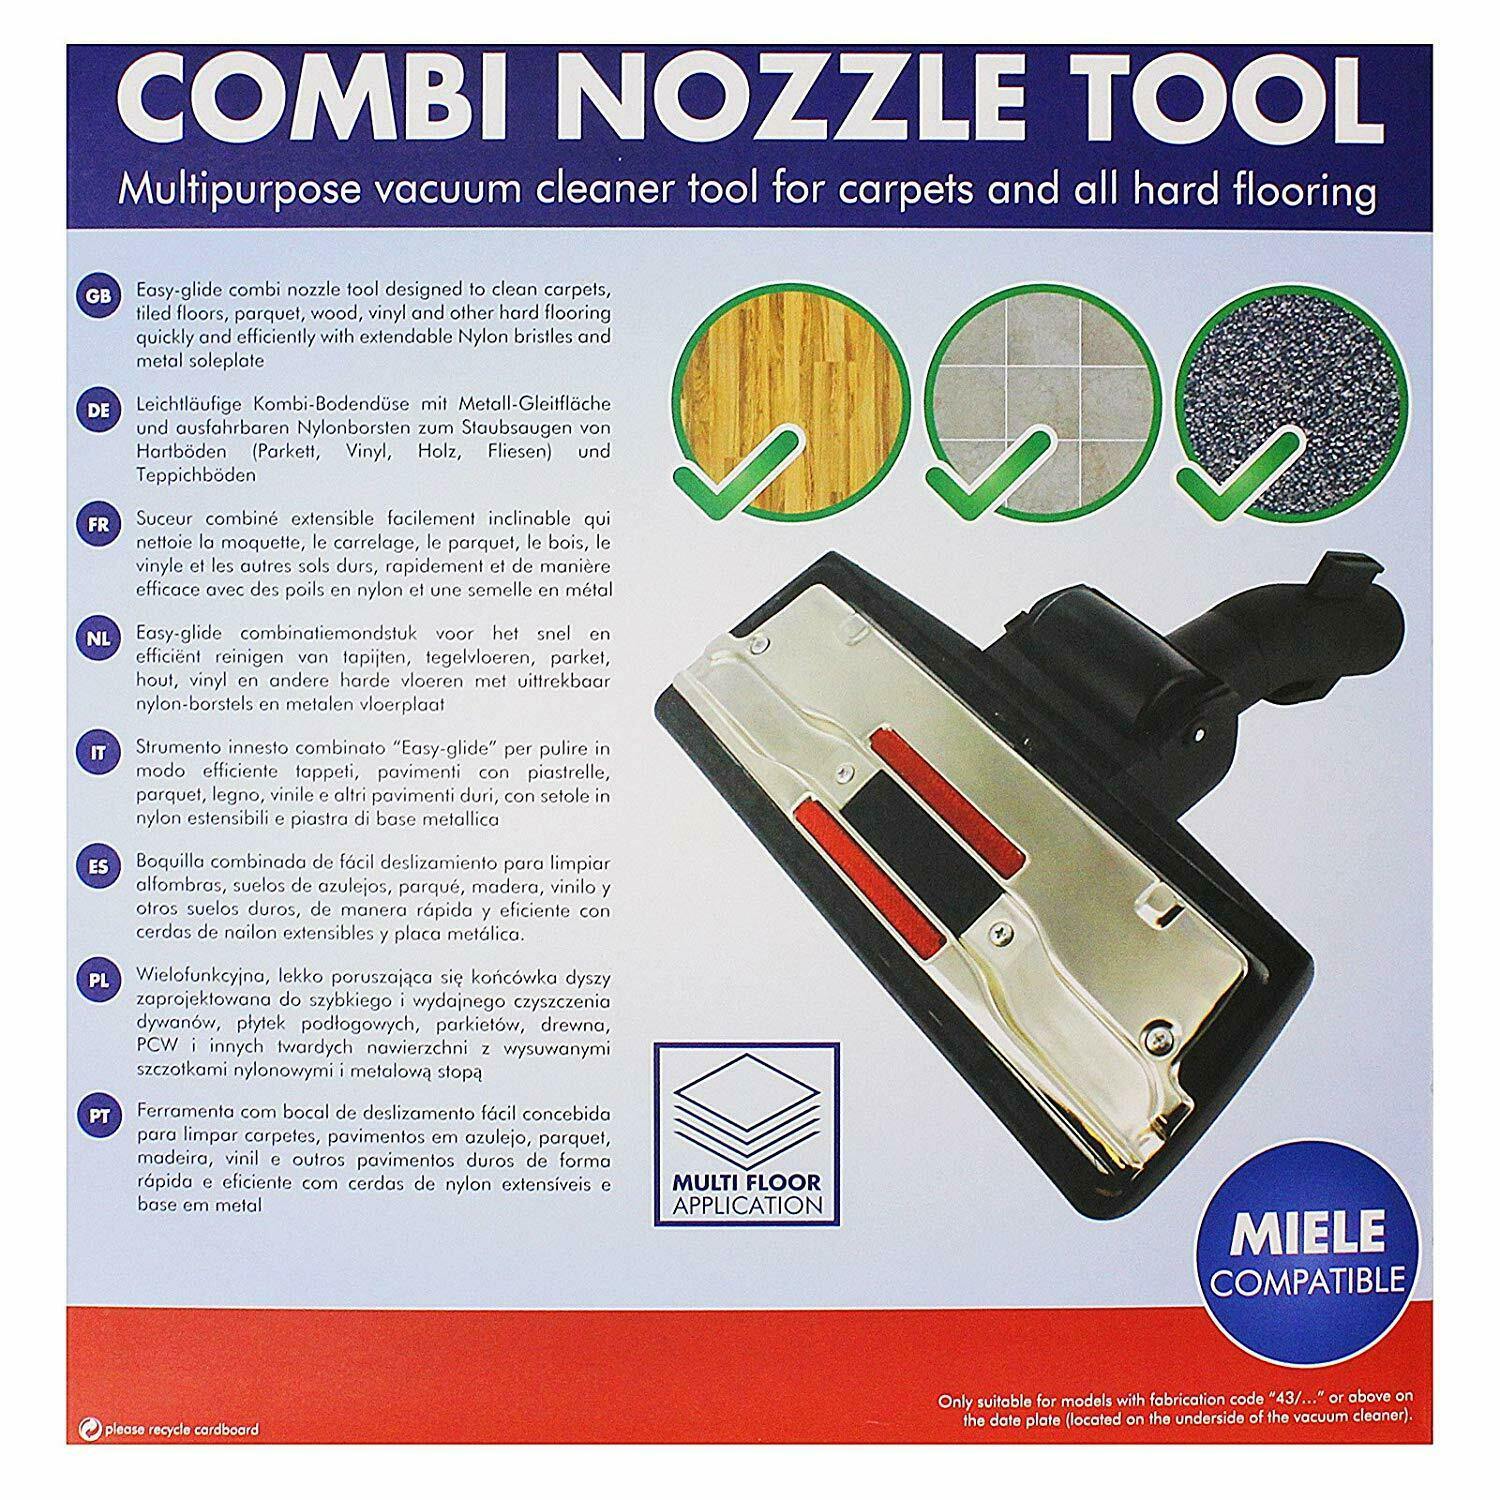 Vacuum Cleaner Floor Head Tool For Nilfisk VL500 35 Basic Commercial Wet & Dry Sparesbarn